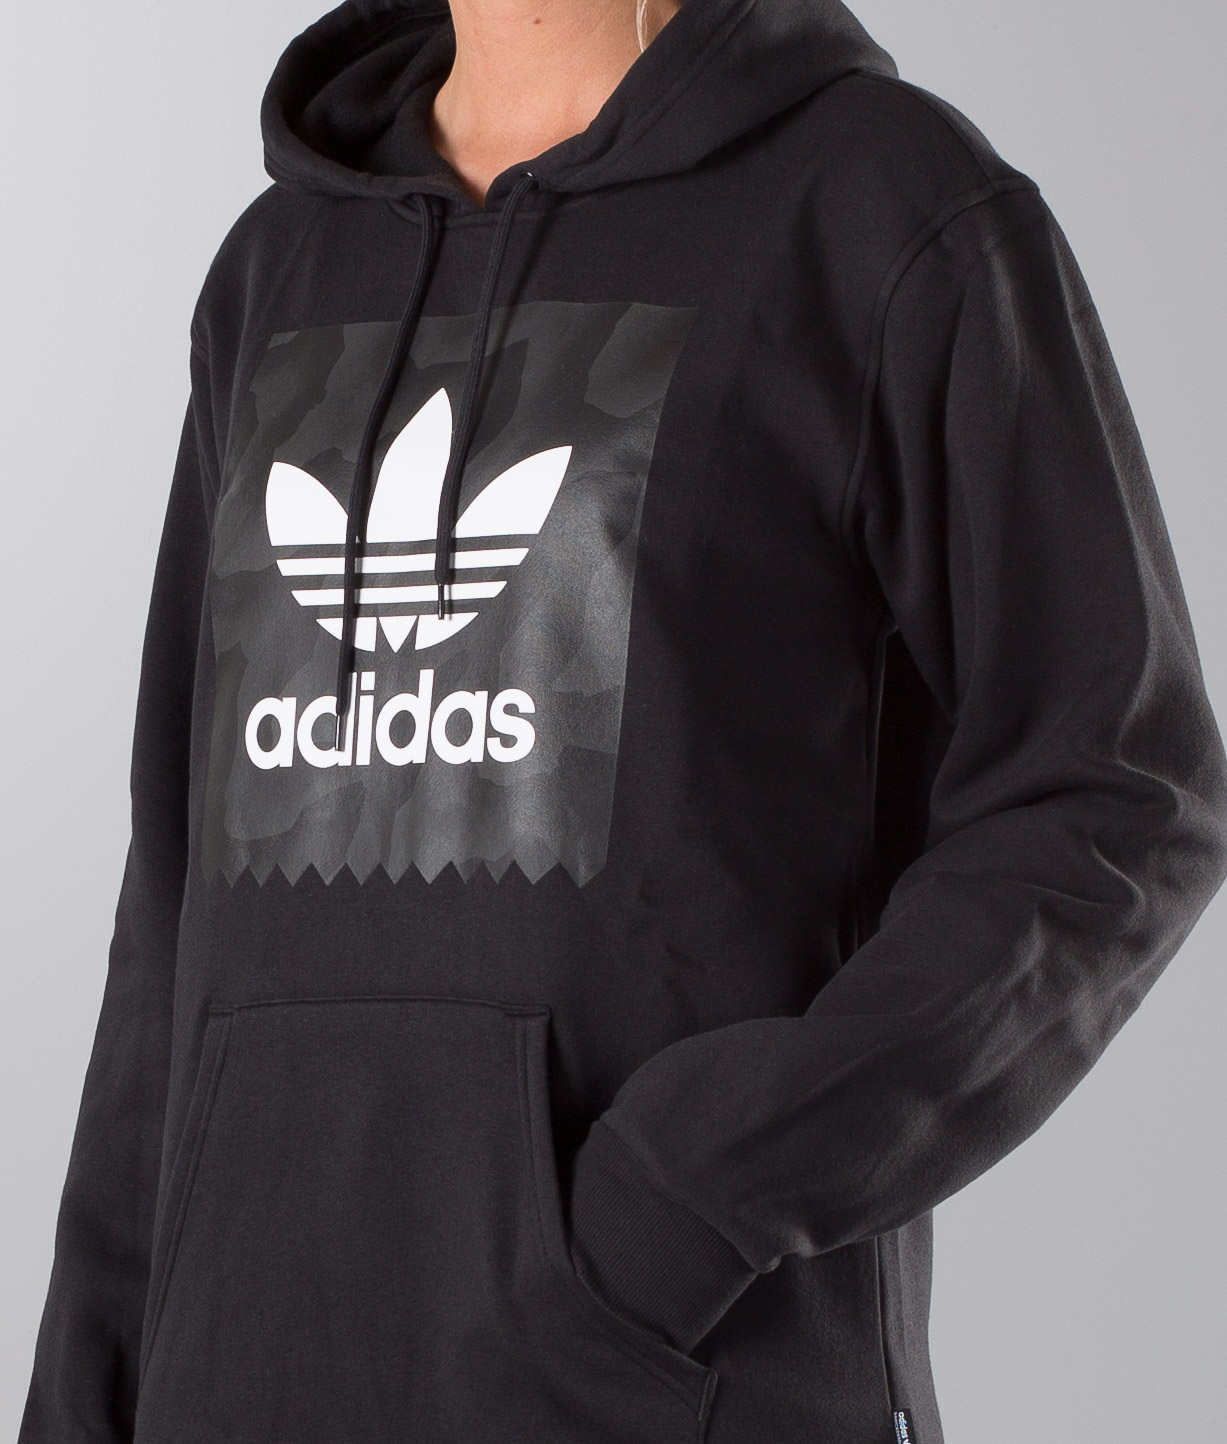 adidas blackbird reel pullover hoodie